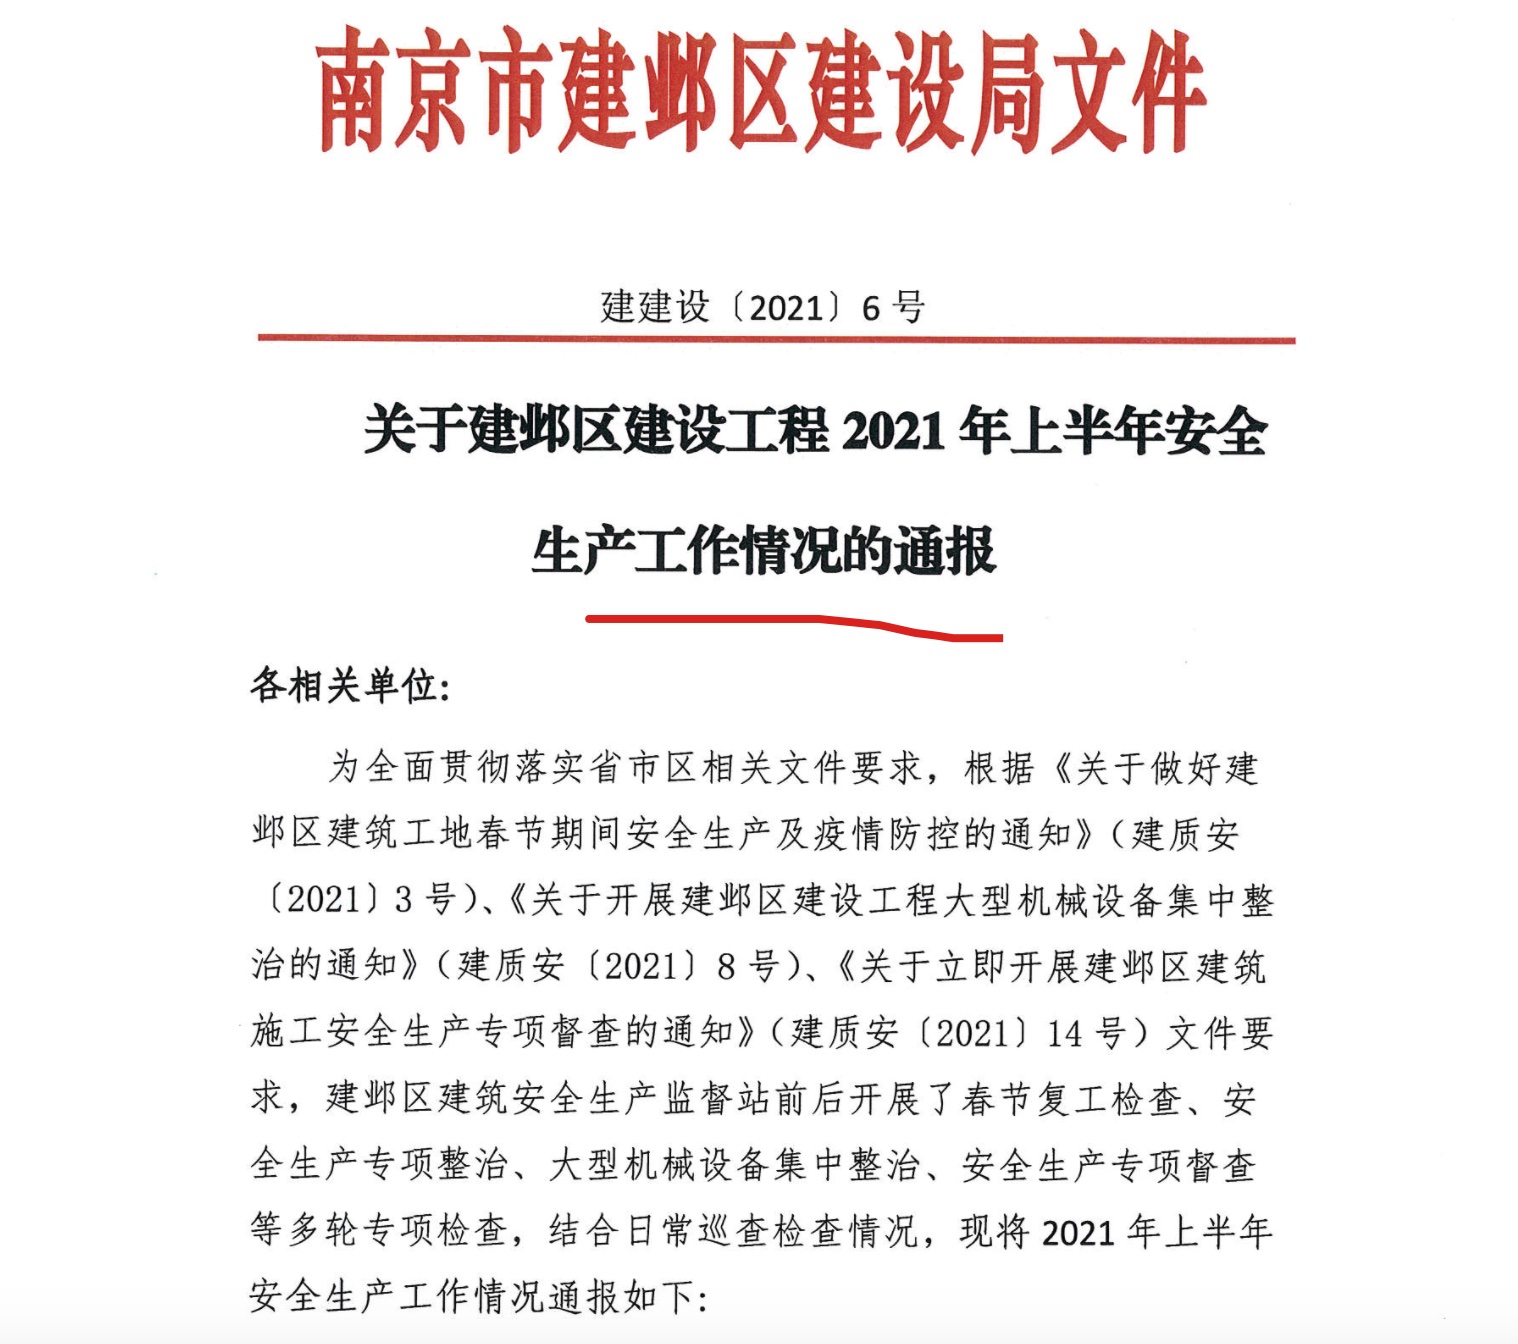 南京NO.2014G82项目安全违规被红牌警示 建设单位系升龙集团子公司